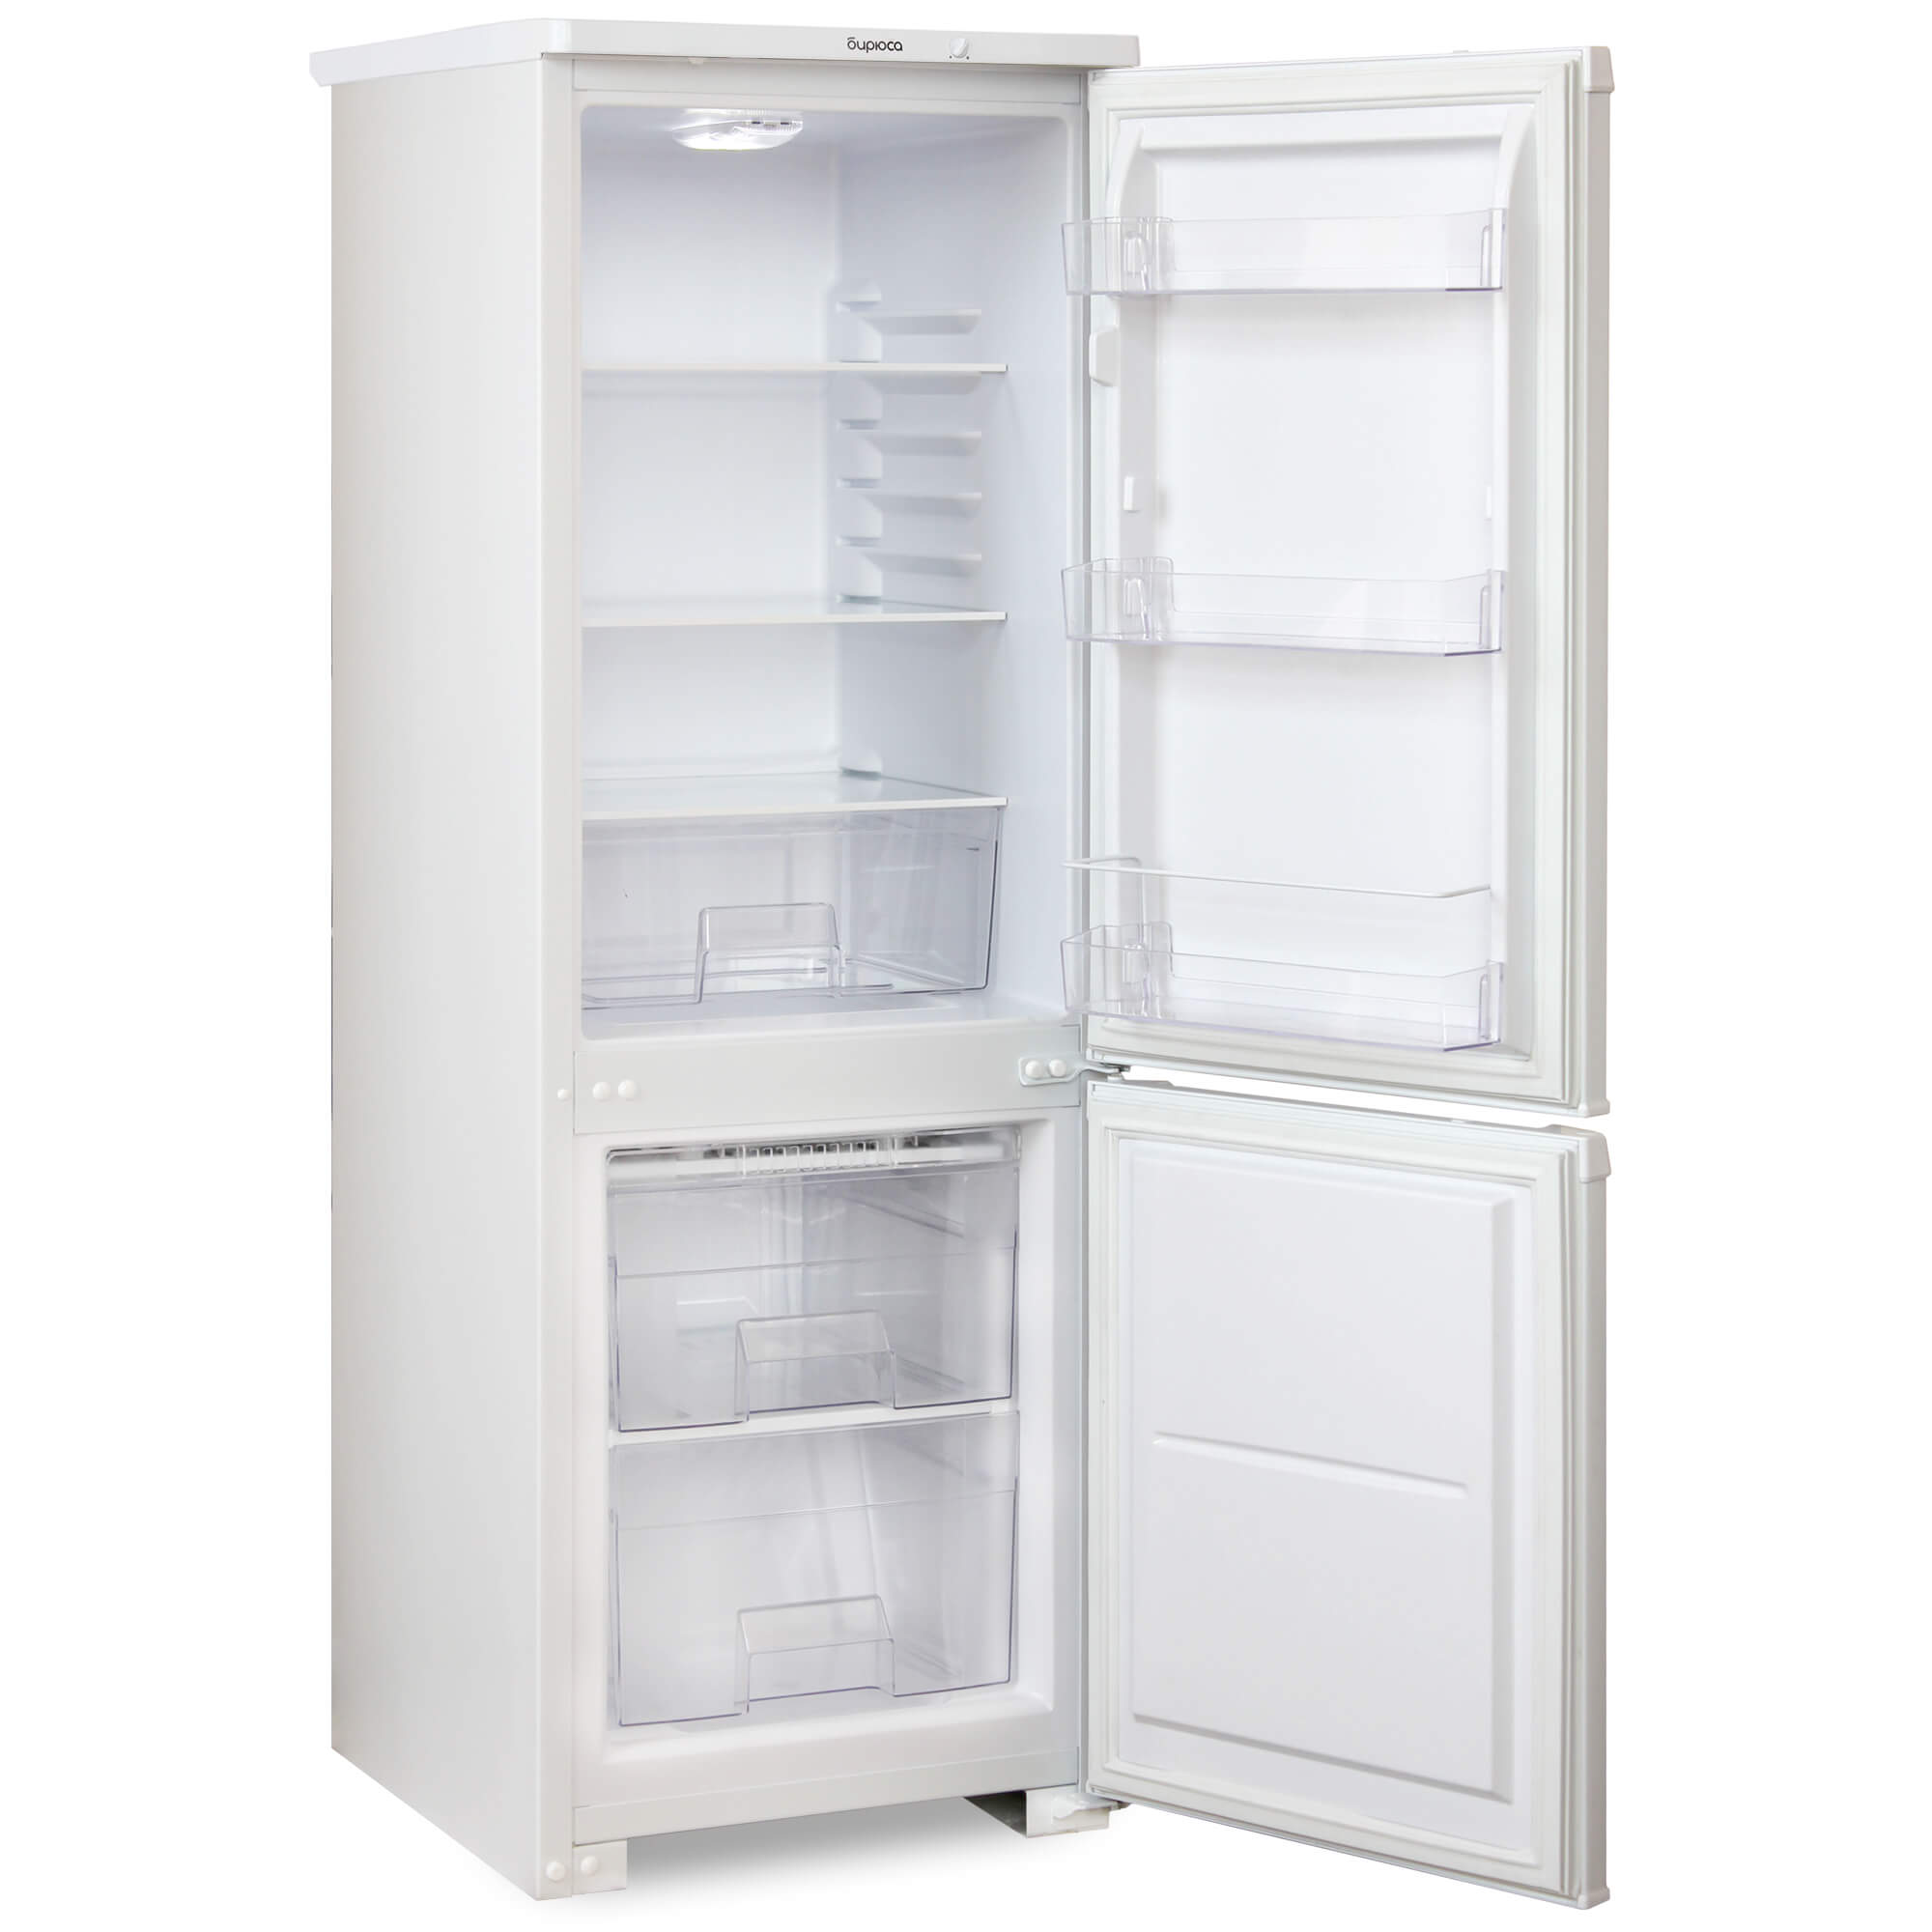 Холодильники индезит отзывы специалистов и покупателей. Холодильник Stinol STS 185 белый. Холодильник Stinol STS 167. Whirlpool WTNF 902 W. Индезит SB200.027 холодильник.